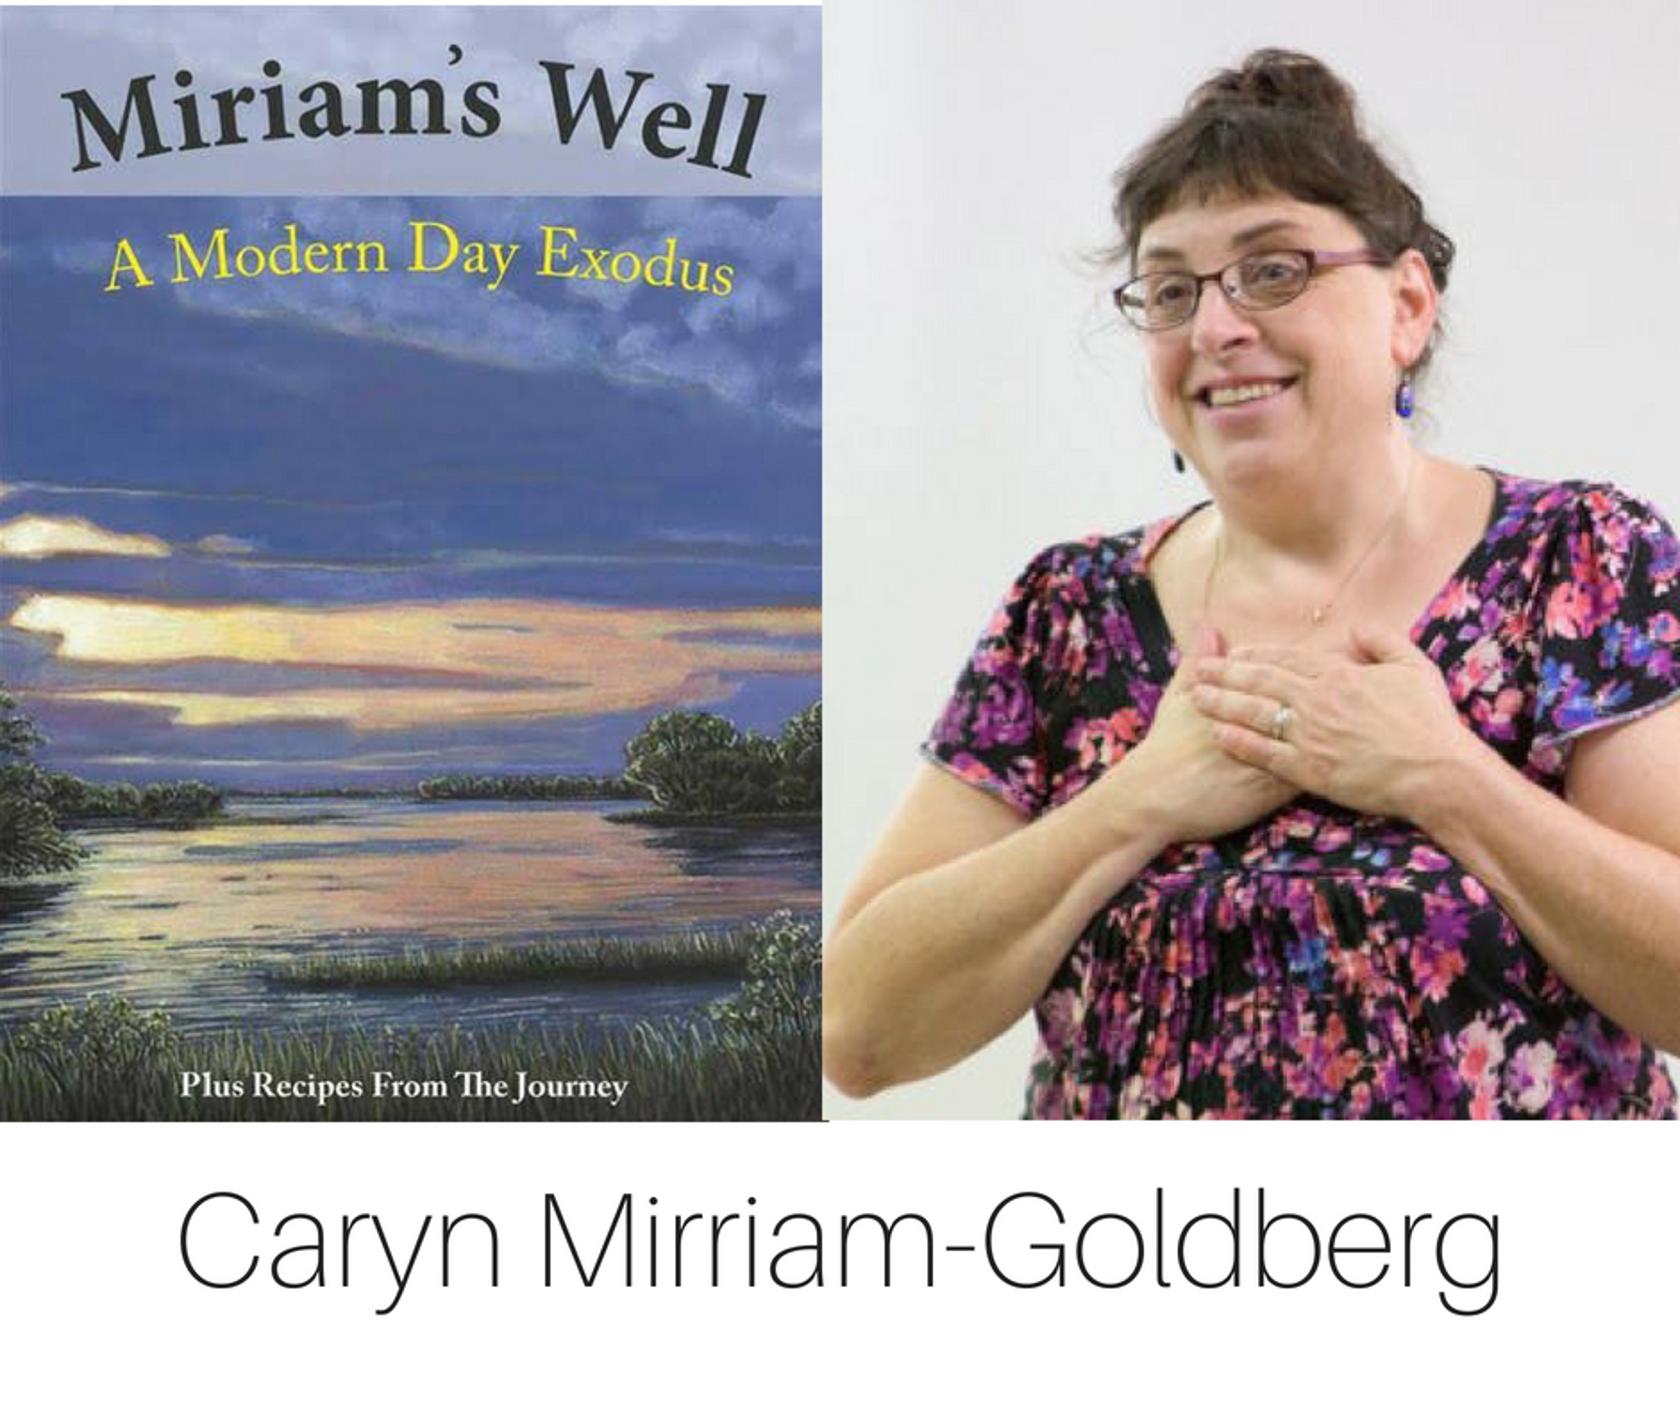 Caryn Mirriam-Goldberg